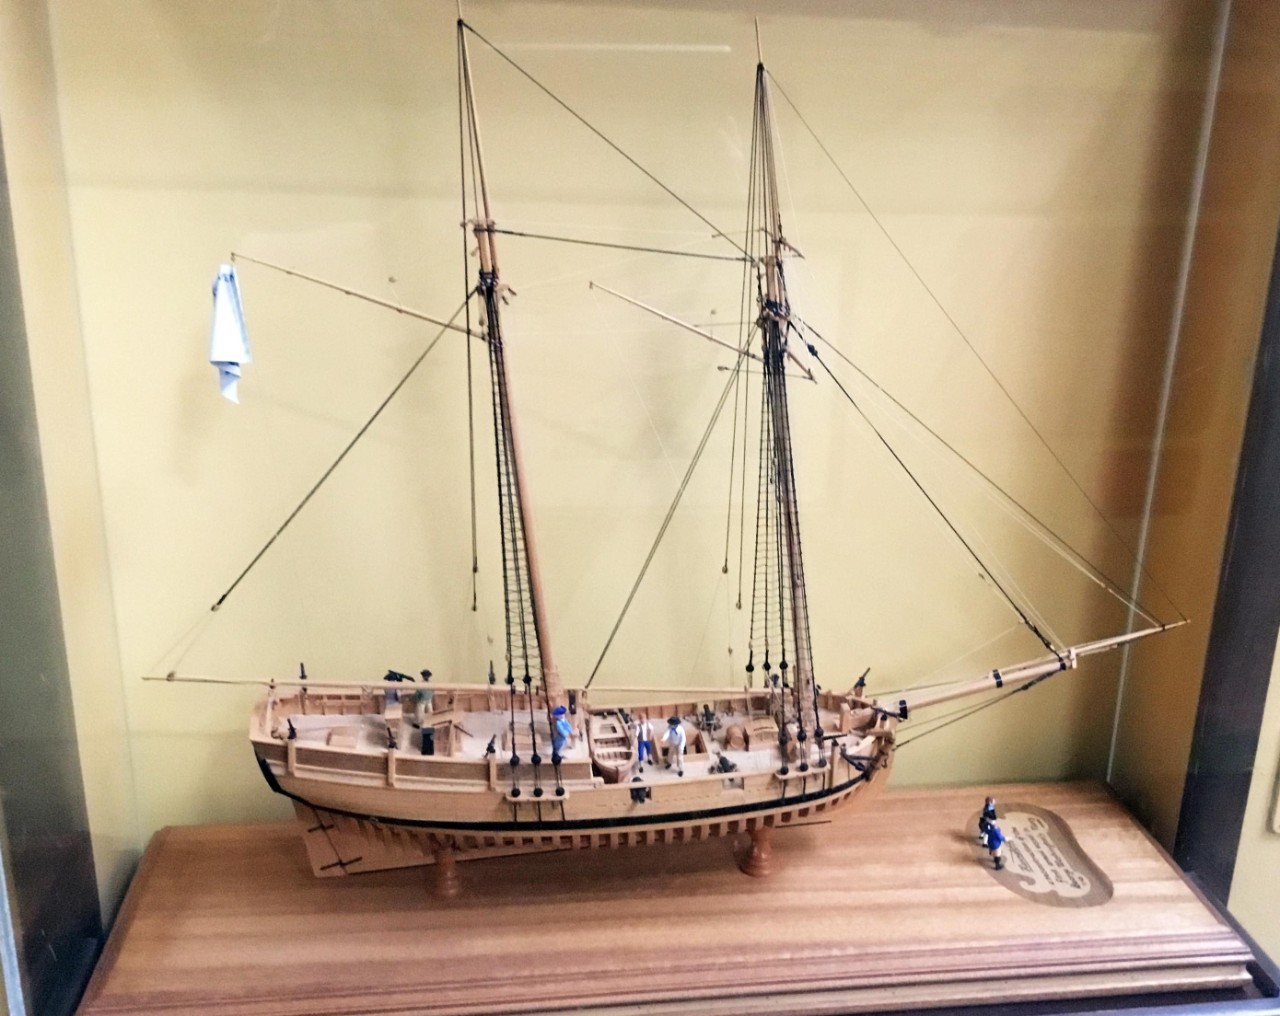 NMUSN:  American Revolution:  Continental Navy schooner Hannah